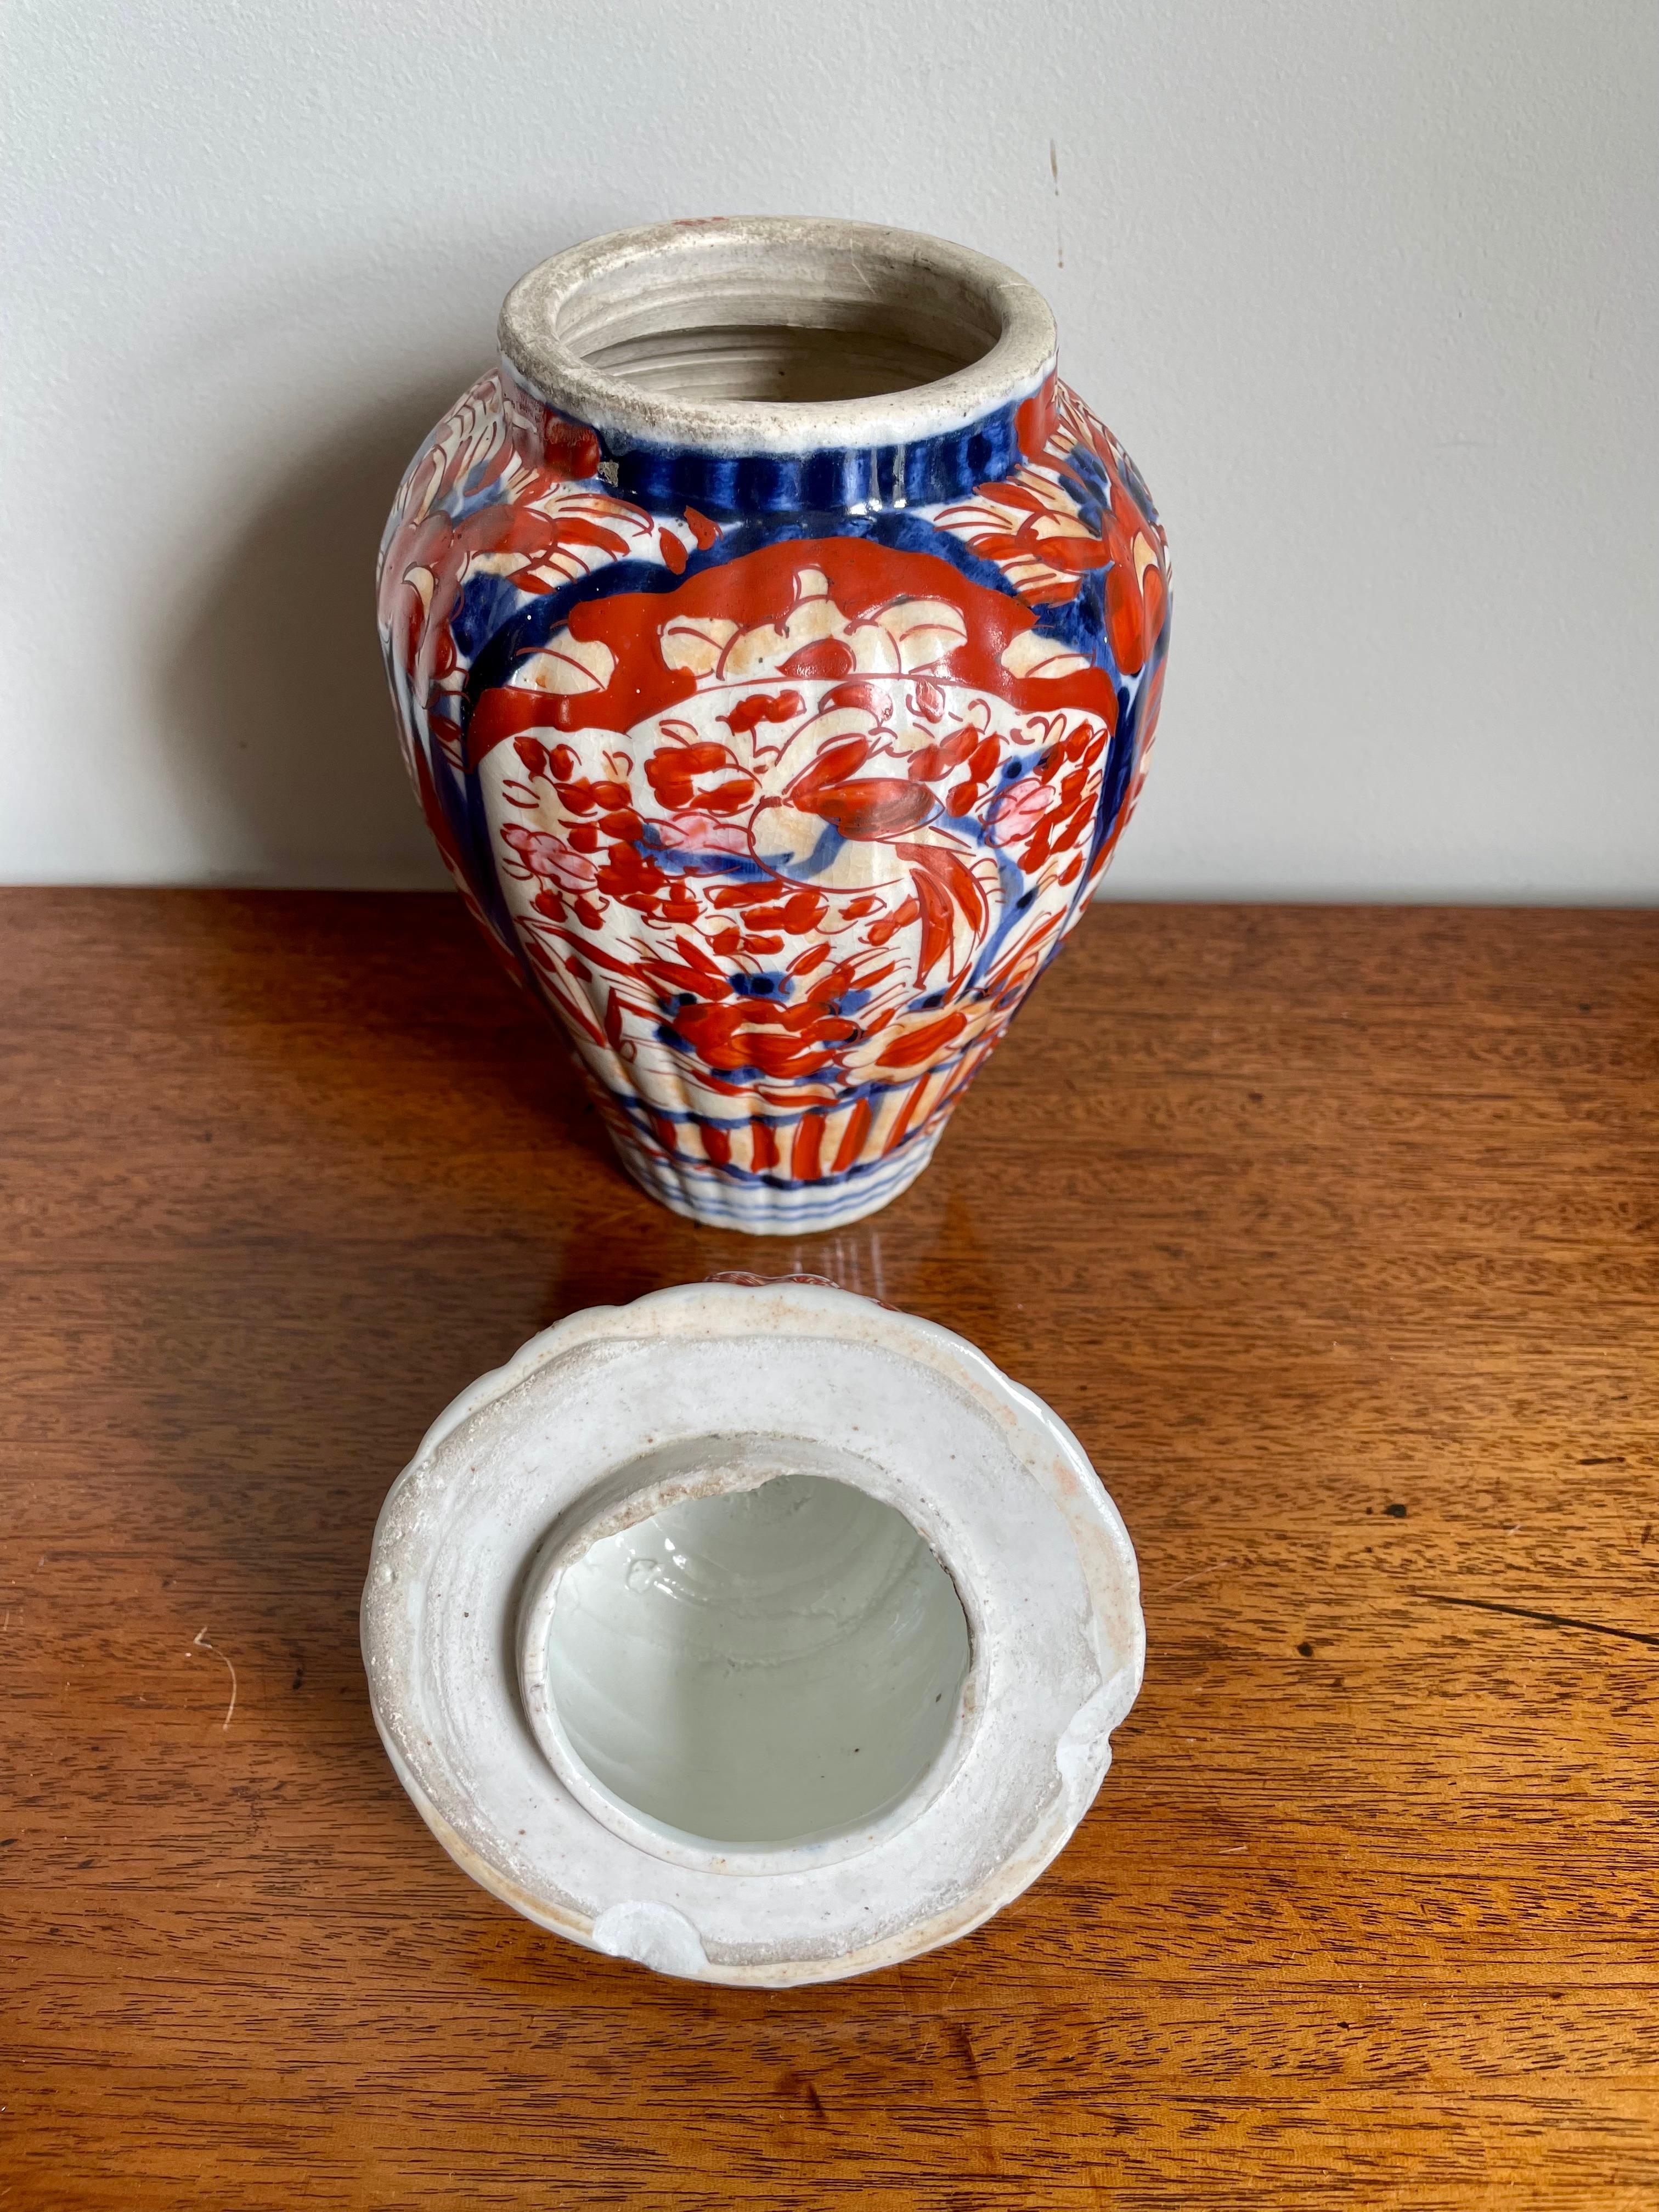 Antique vase imari de forme avec couvercle ayant un sommet en forme de fleuron et un couvercle en forme de dôme, vase de forme balustre avec une belle décoration peinte à la main dans de merveilleuses couleurs de rouge, bleu, blanc et or.

Une